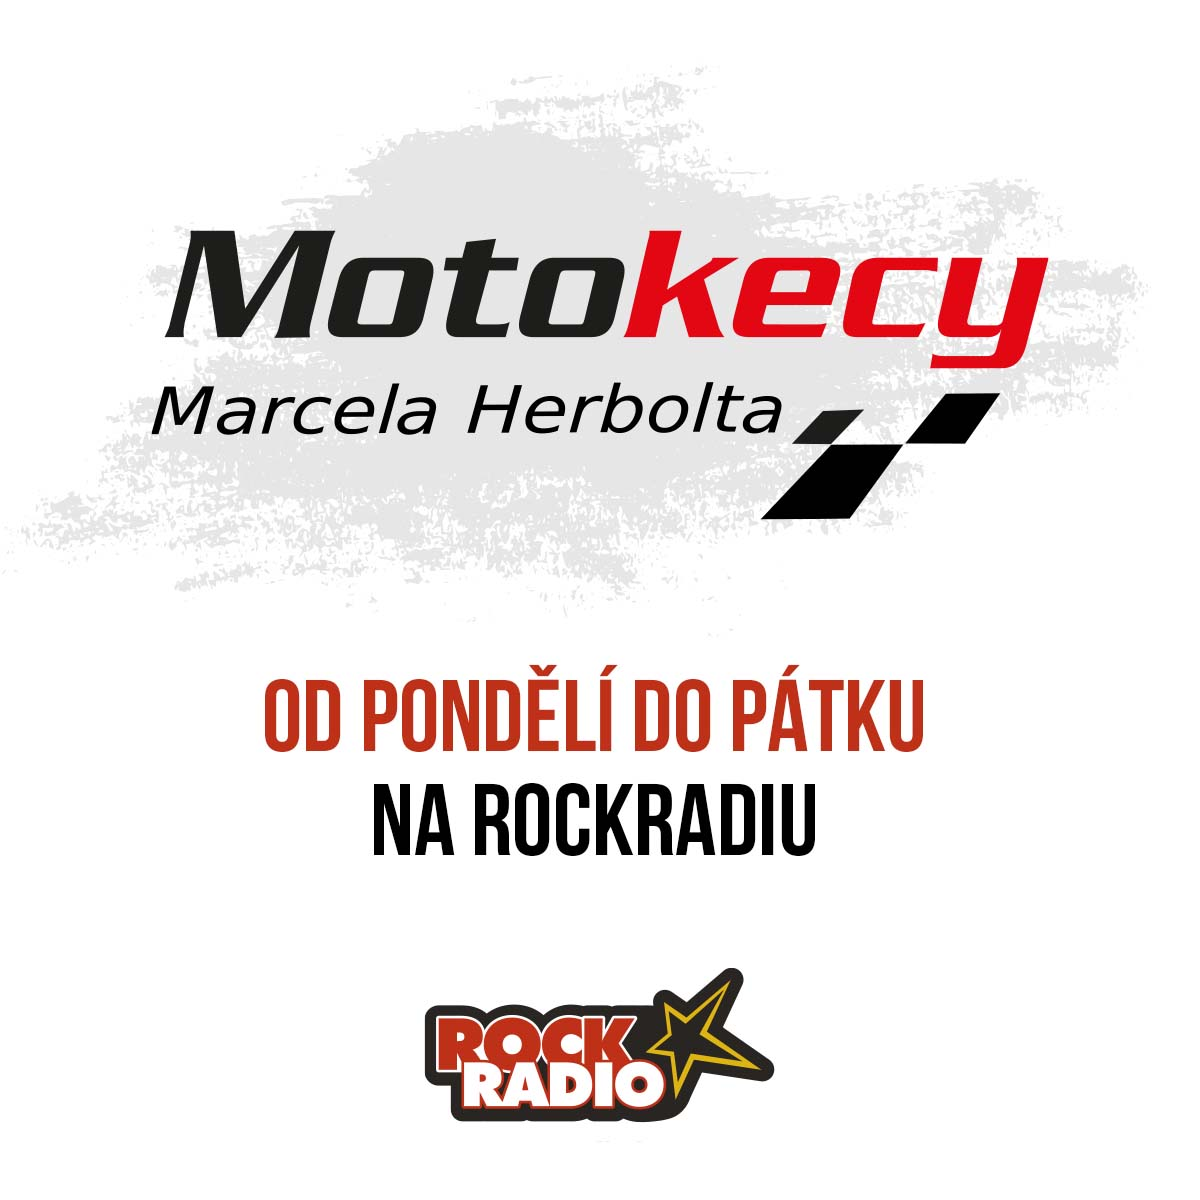 Motokecy Marcela Herbolta na pátek 22. září